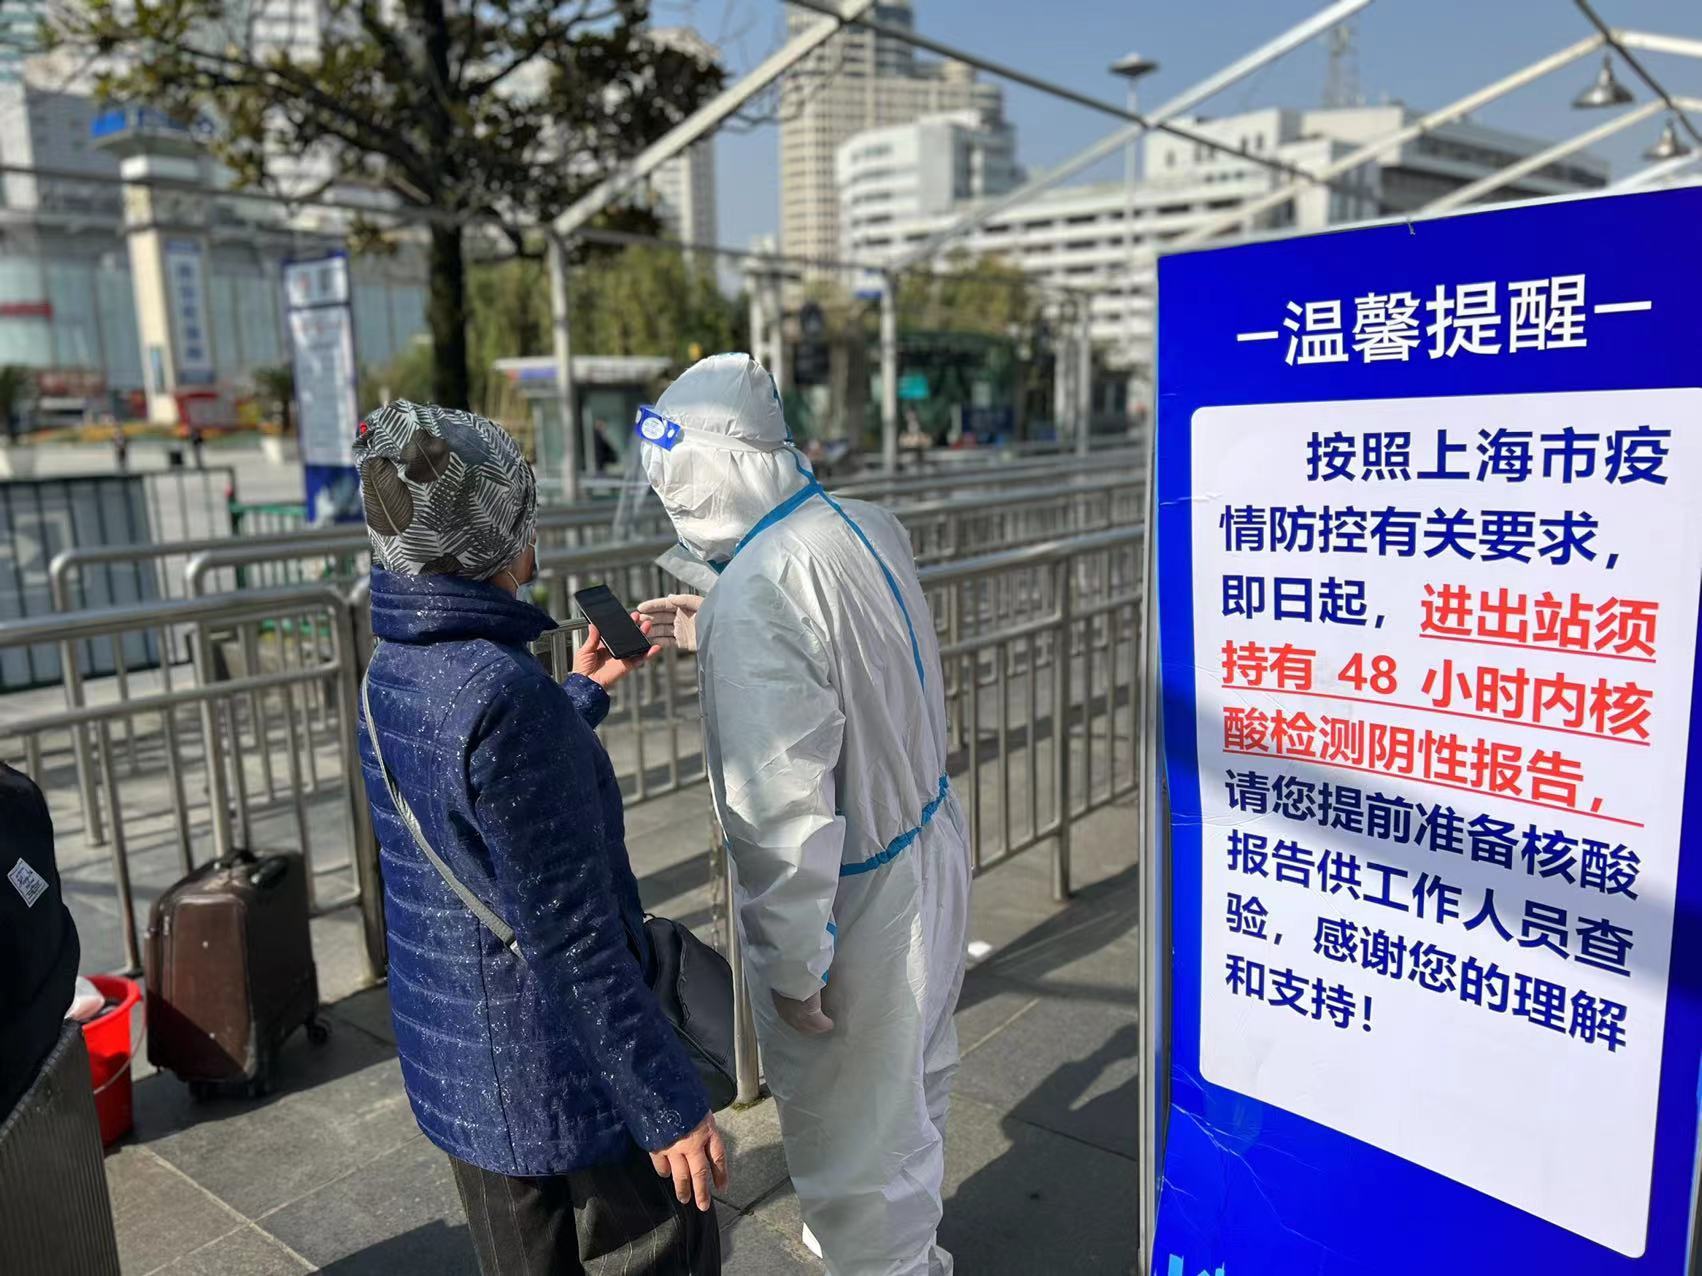 已经放置了提醒标牌"根据上海市疫情防控有关要求,进,出站须持48小时